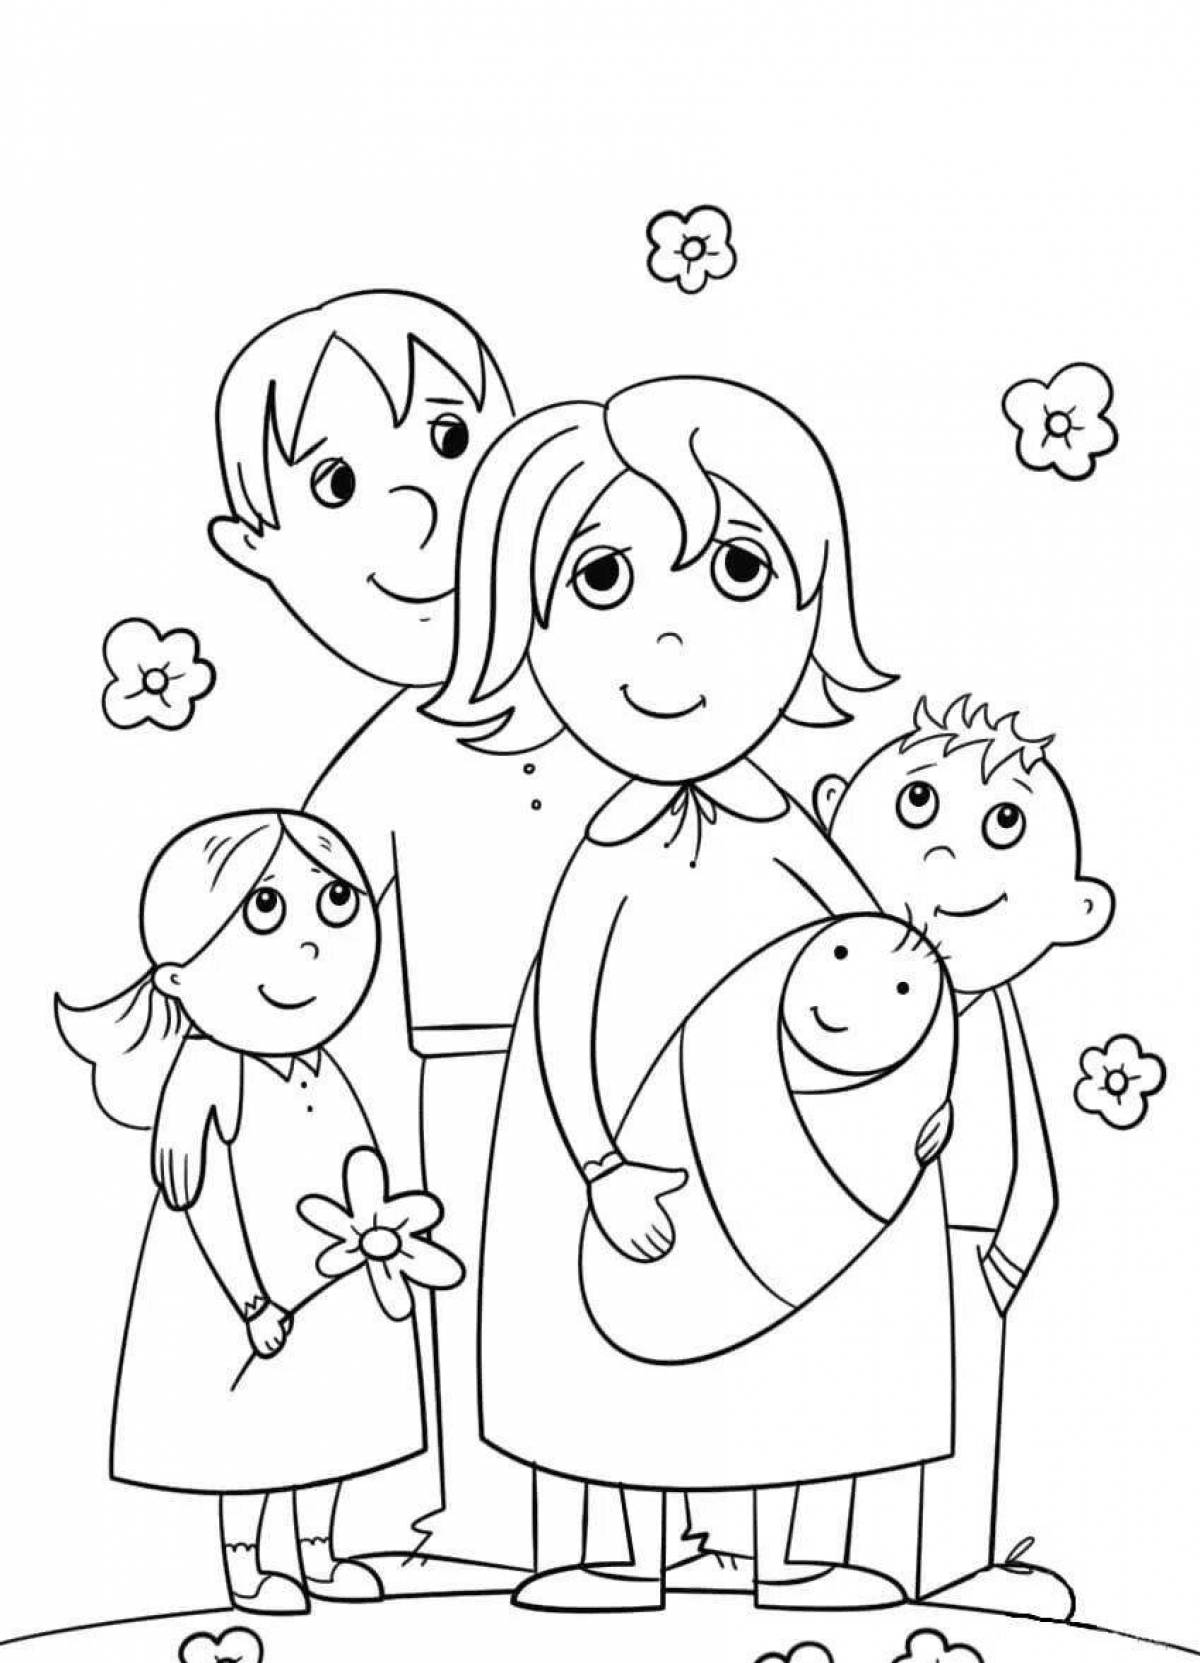 Children's family #2